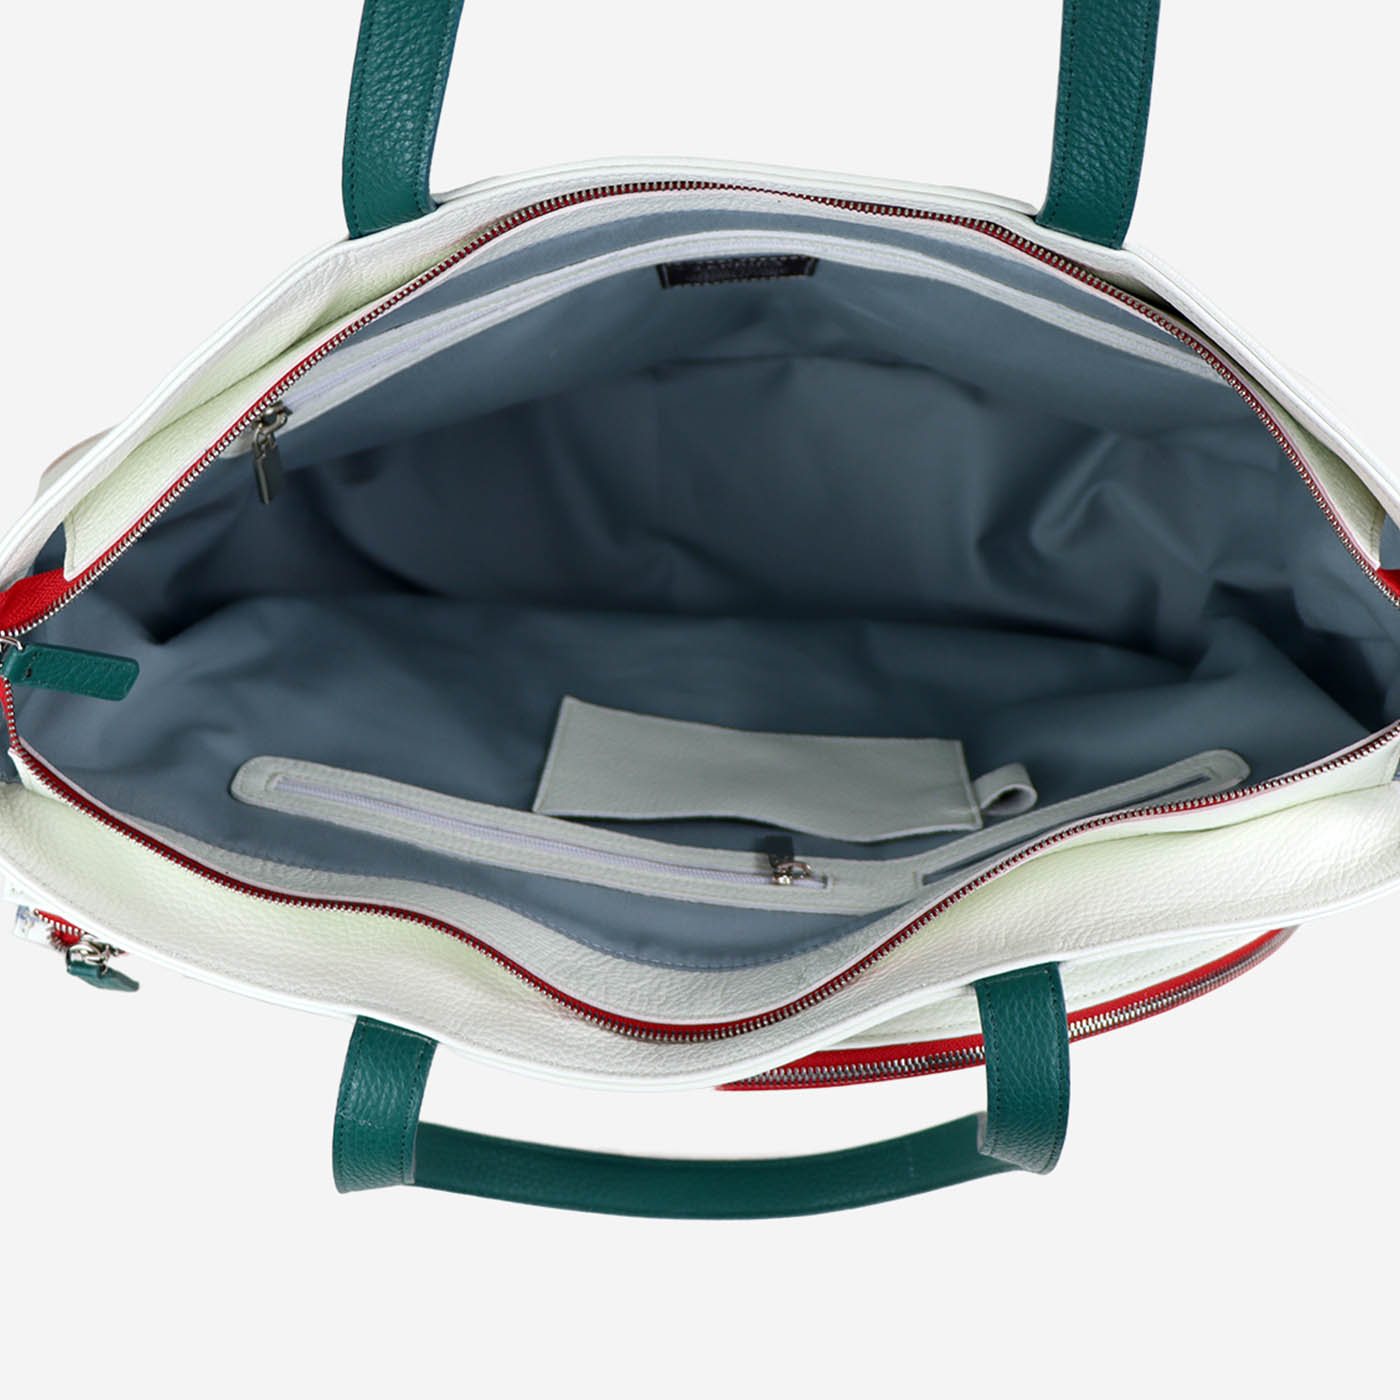 Bolsa de deporte blanca y roja con bolsillo en forma de raqueta de tenis - Vista alternativa 2